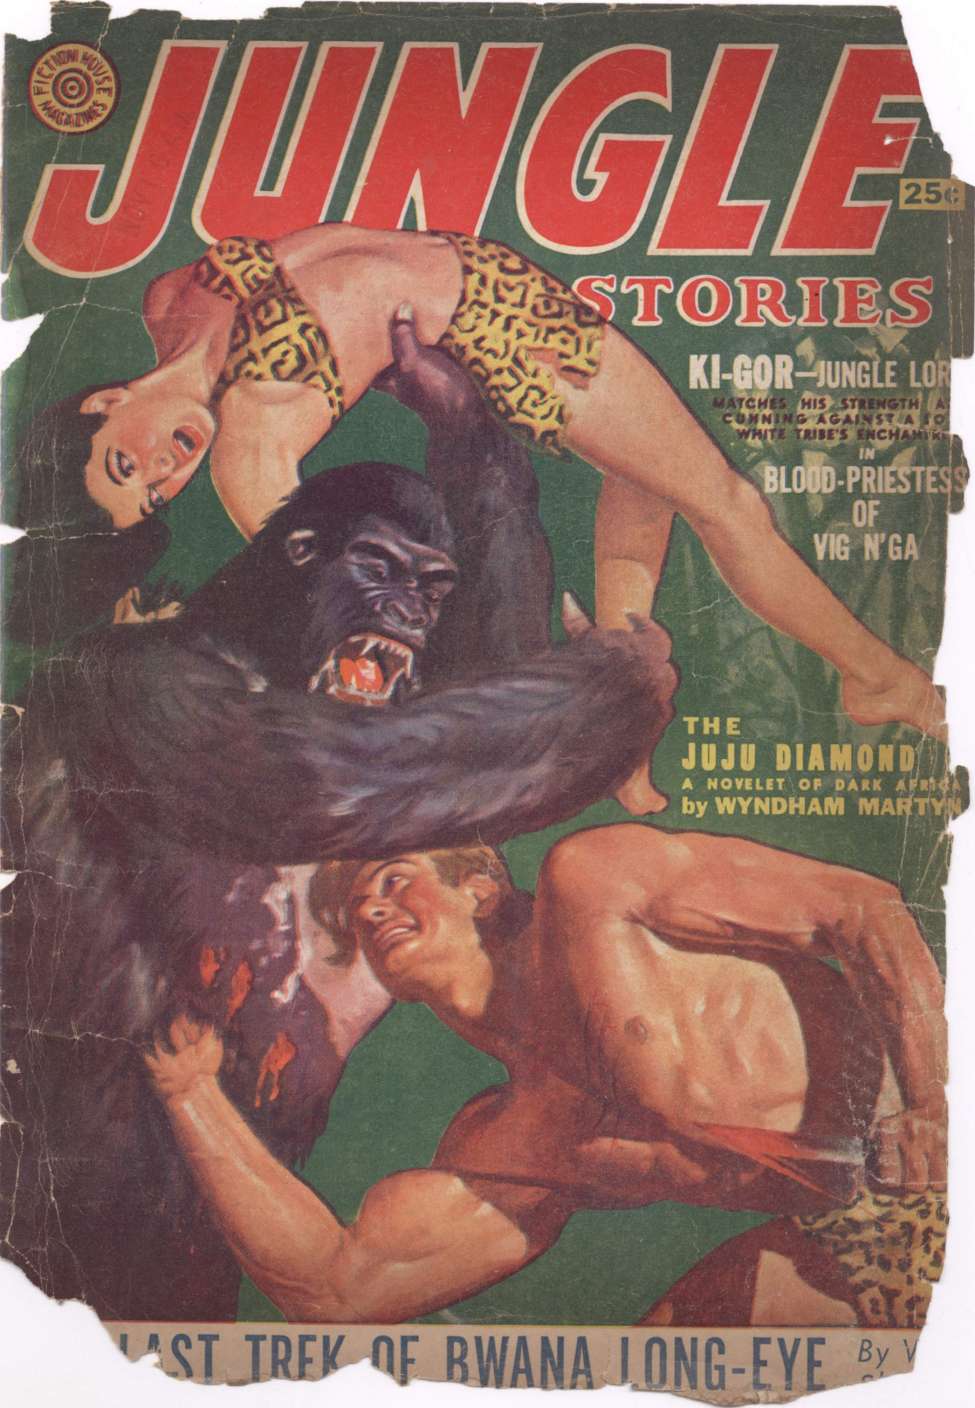 Comic Book Cover For Jungle Stories v5 4 - The Last Trek of Bwana Long-Eye - Walter James Sheldon